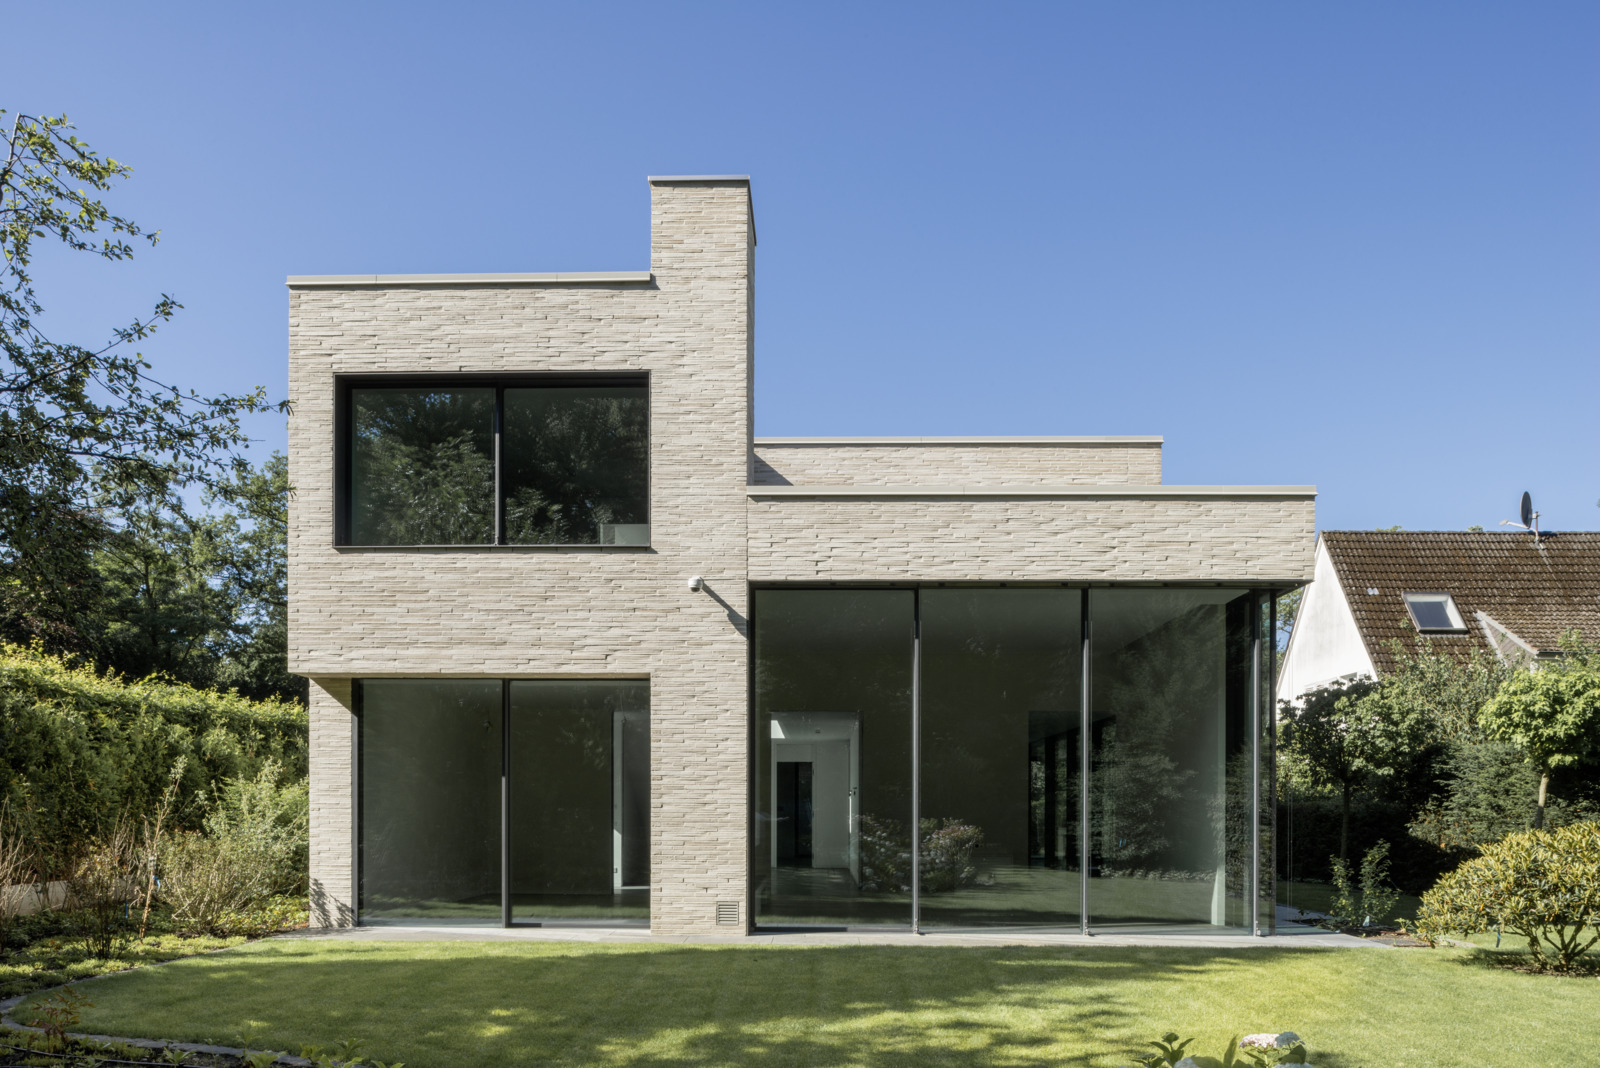 PGH White Bricks on contemporary designed home.